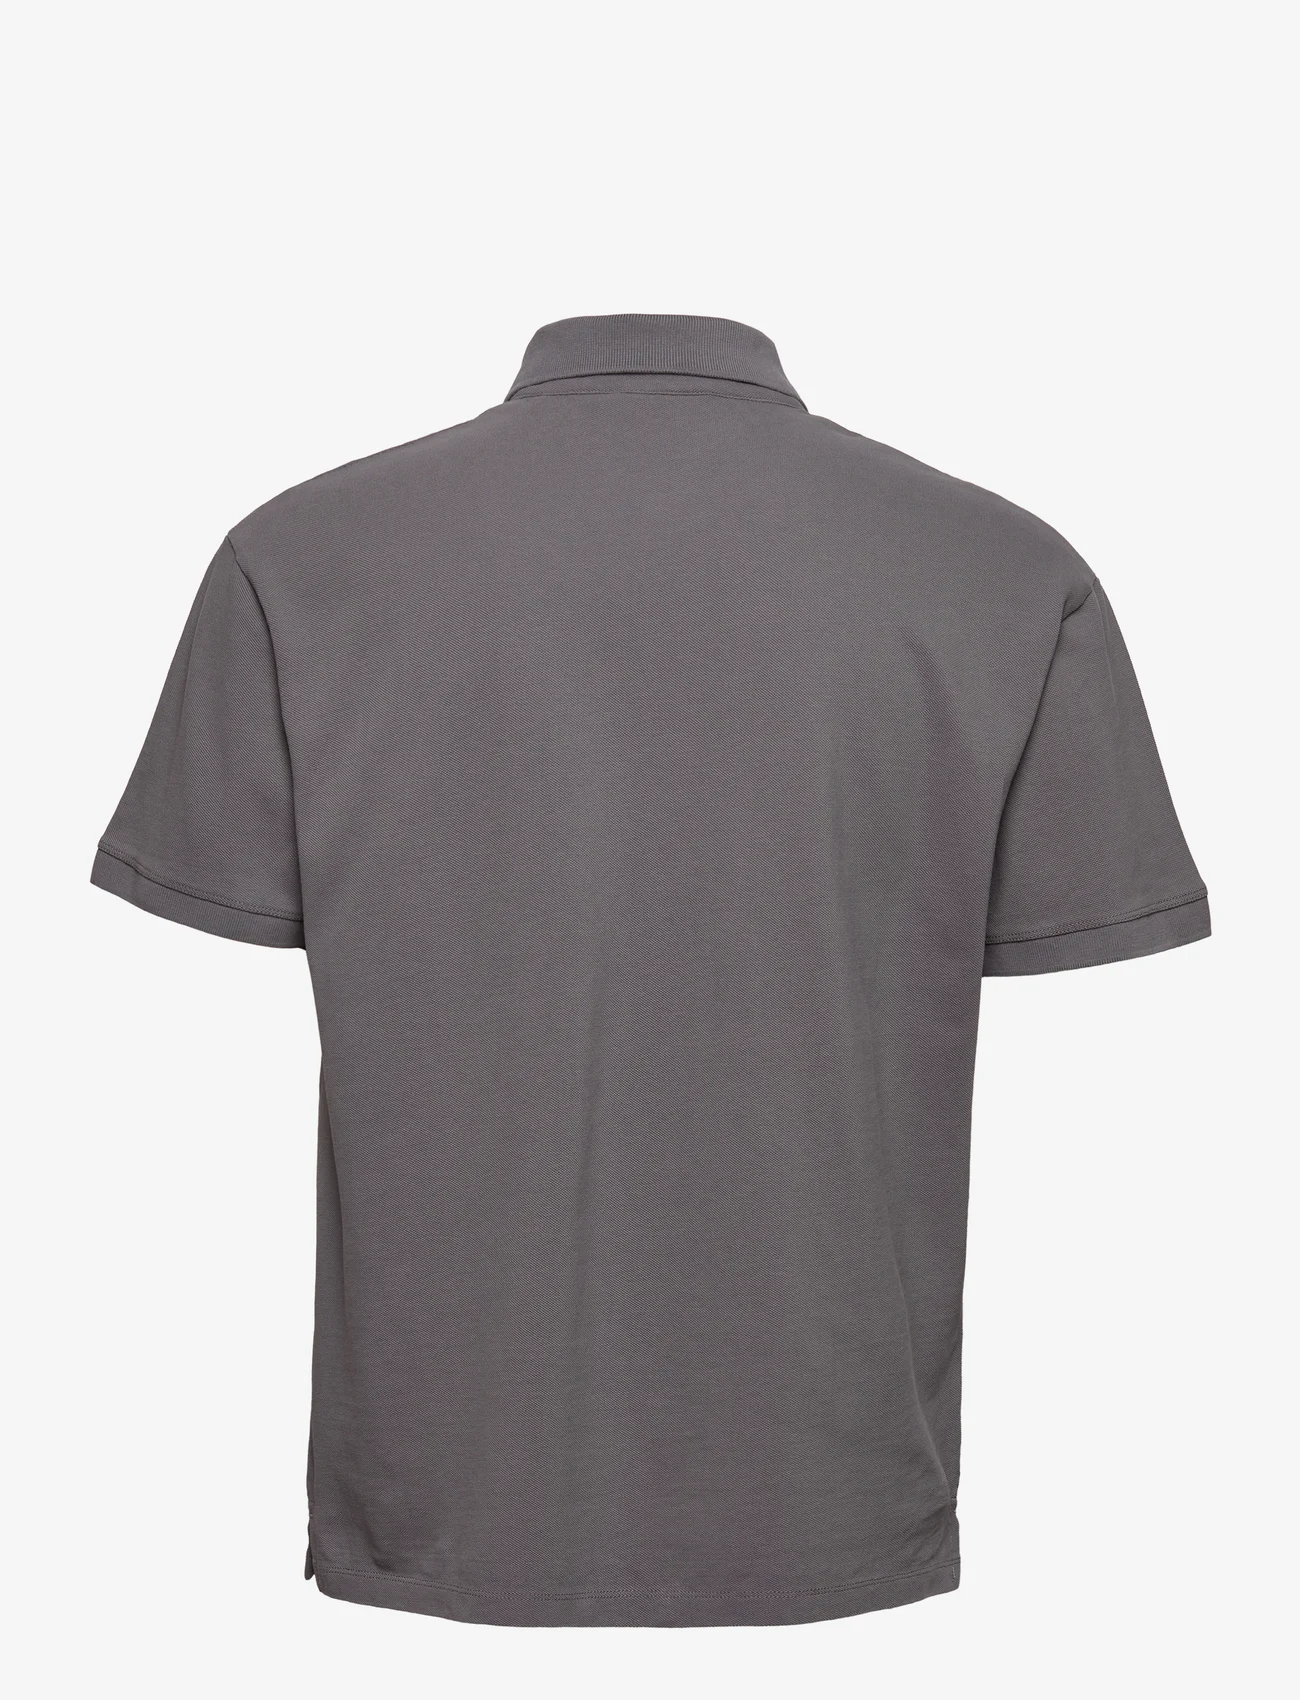 HAN Kjøbenhavn - Polo Shirt Short Sleeve - kortærmede poloer - steel grey - 1